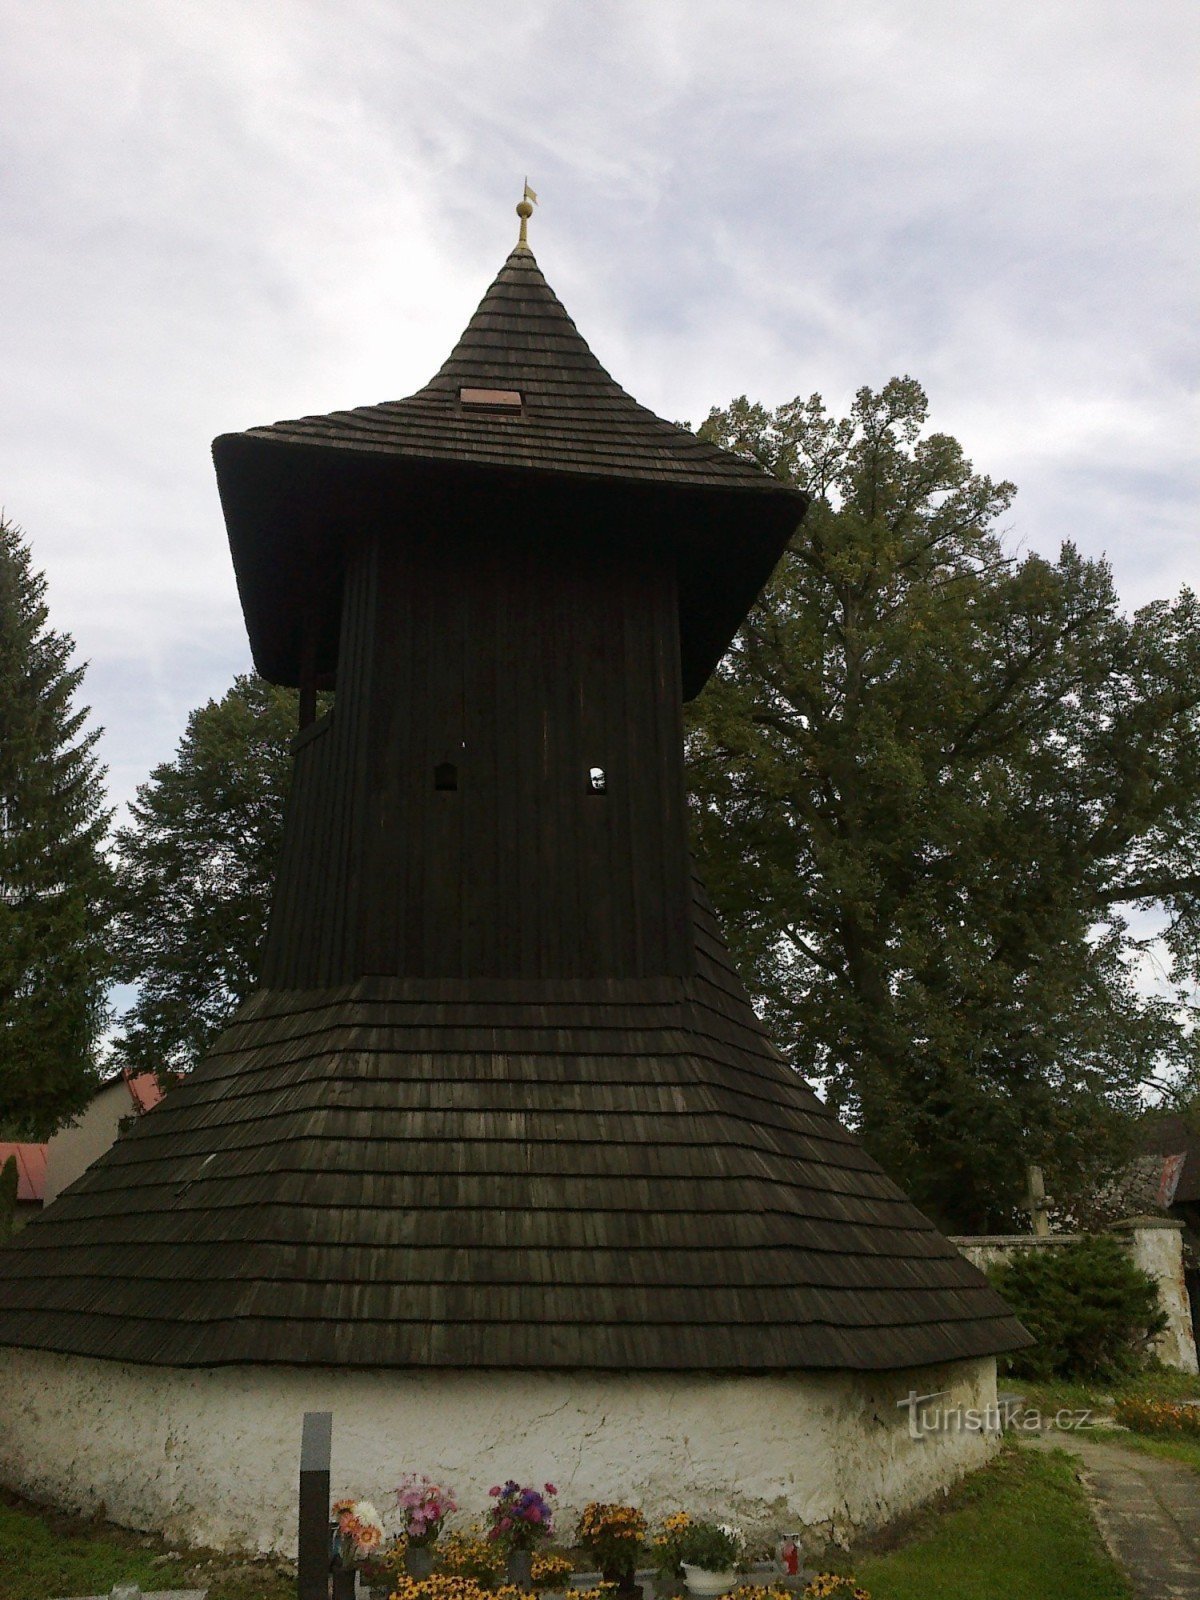 ロティツェの木製の鐘楼。